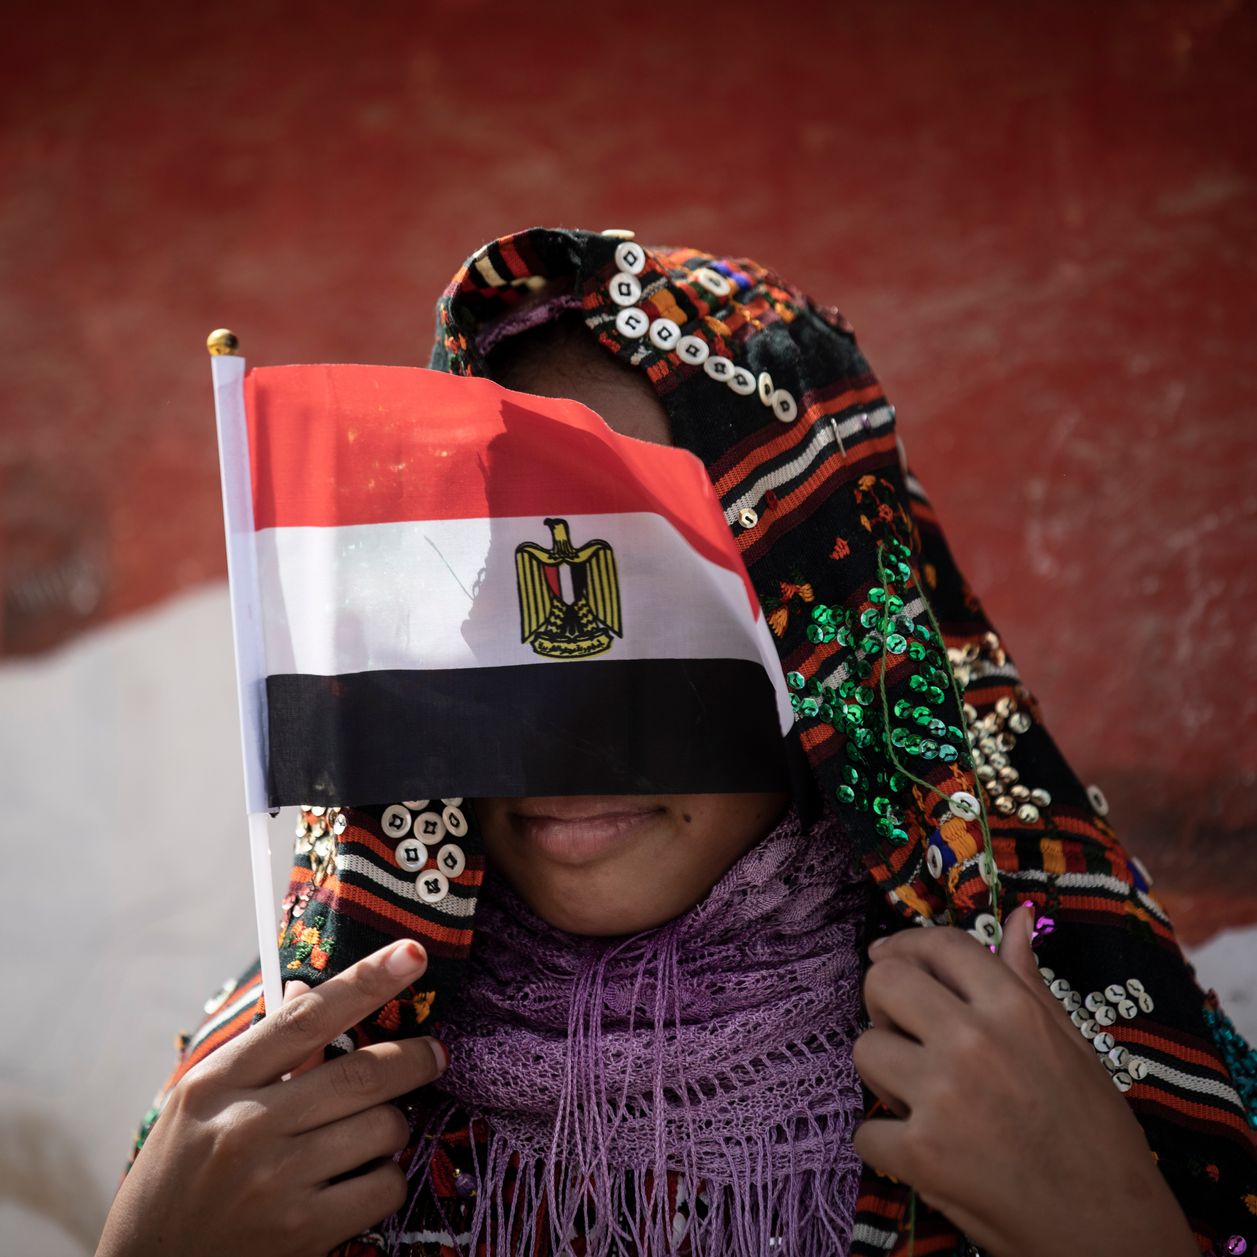 En Égypte, une fille de 12 ans meurt après avoir été excisée